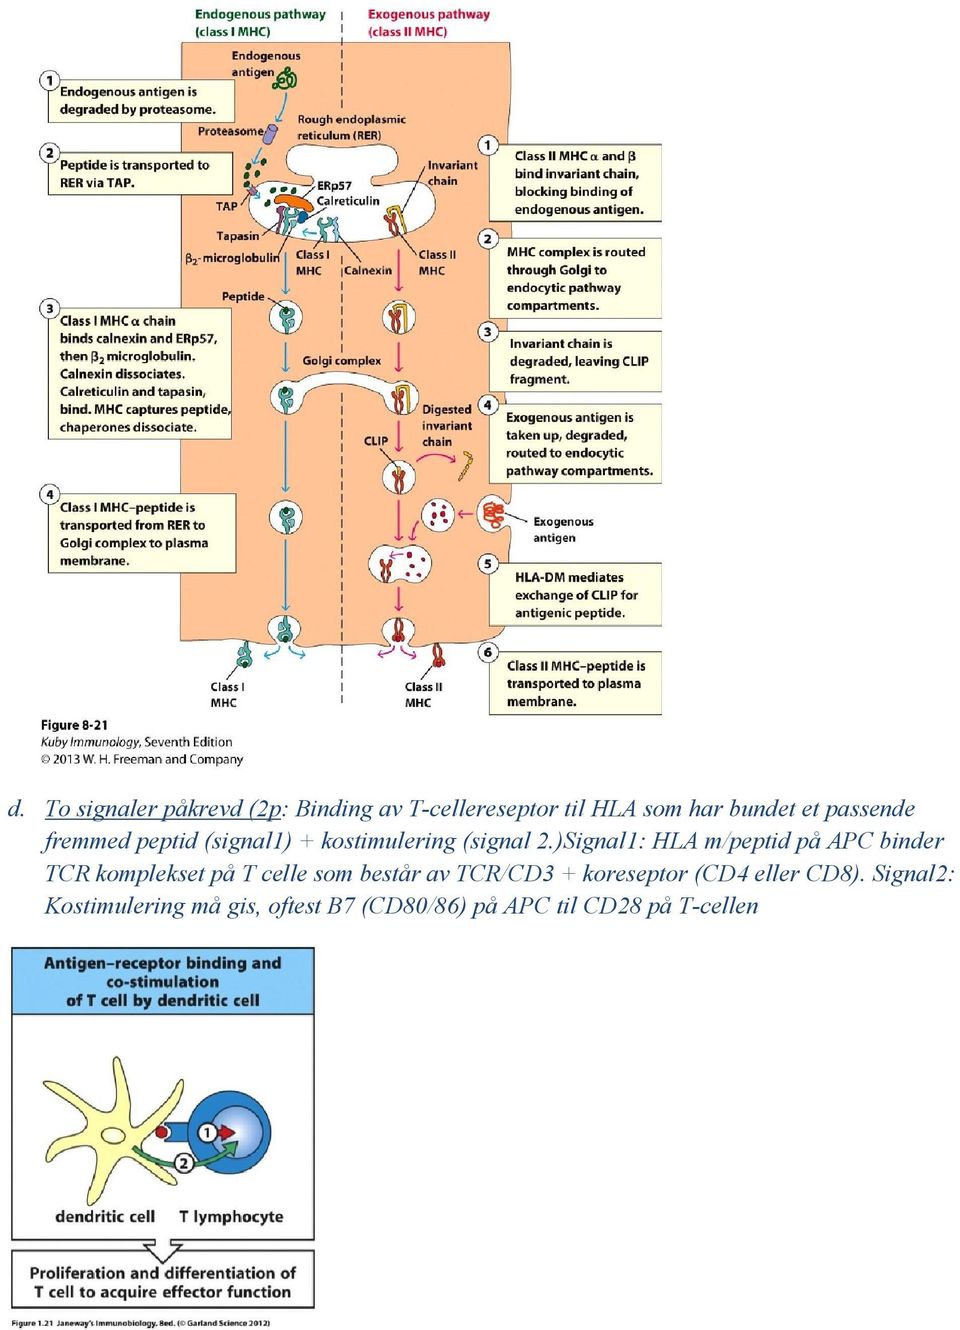 )Signal1: HLA m/peptid på APC binder TCR komplekset på T celle som består av